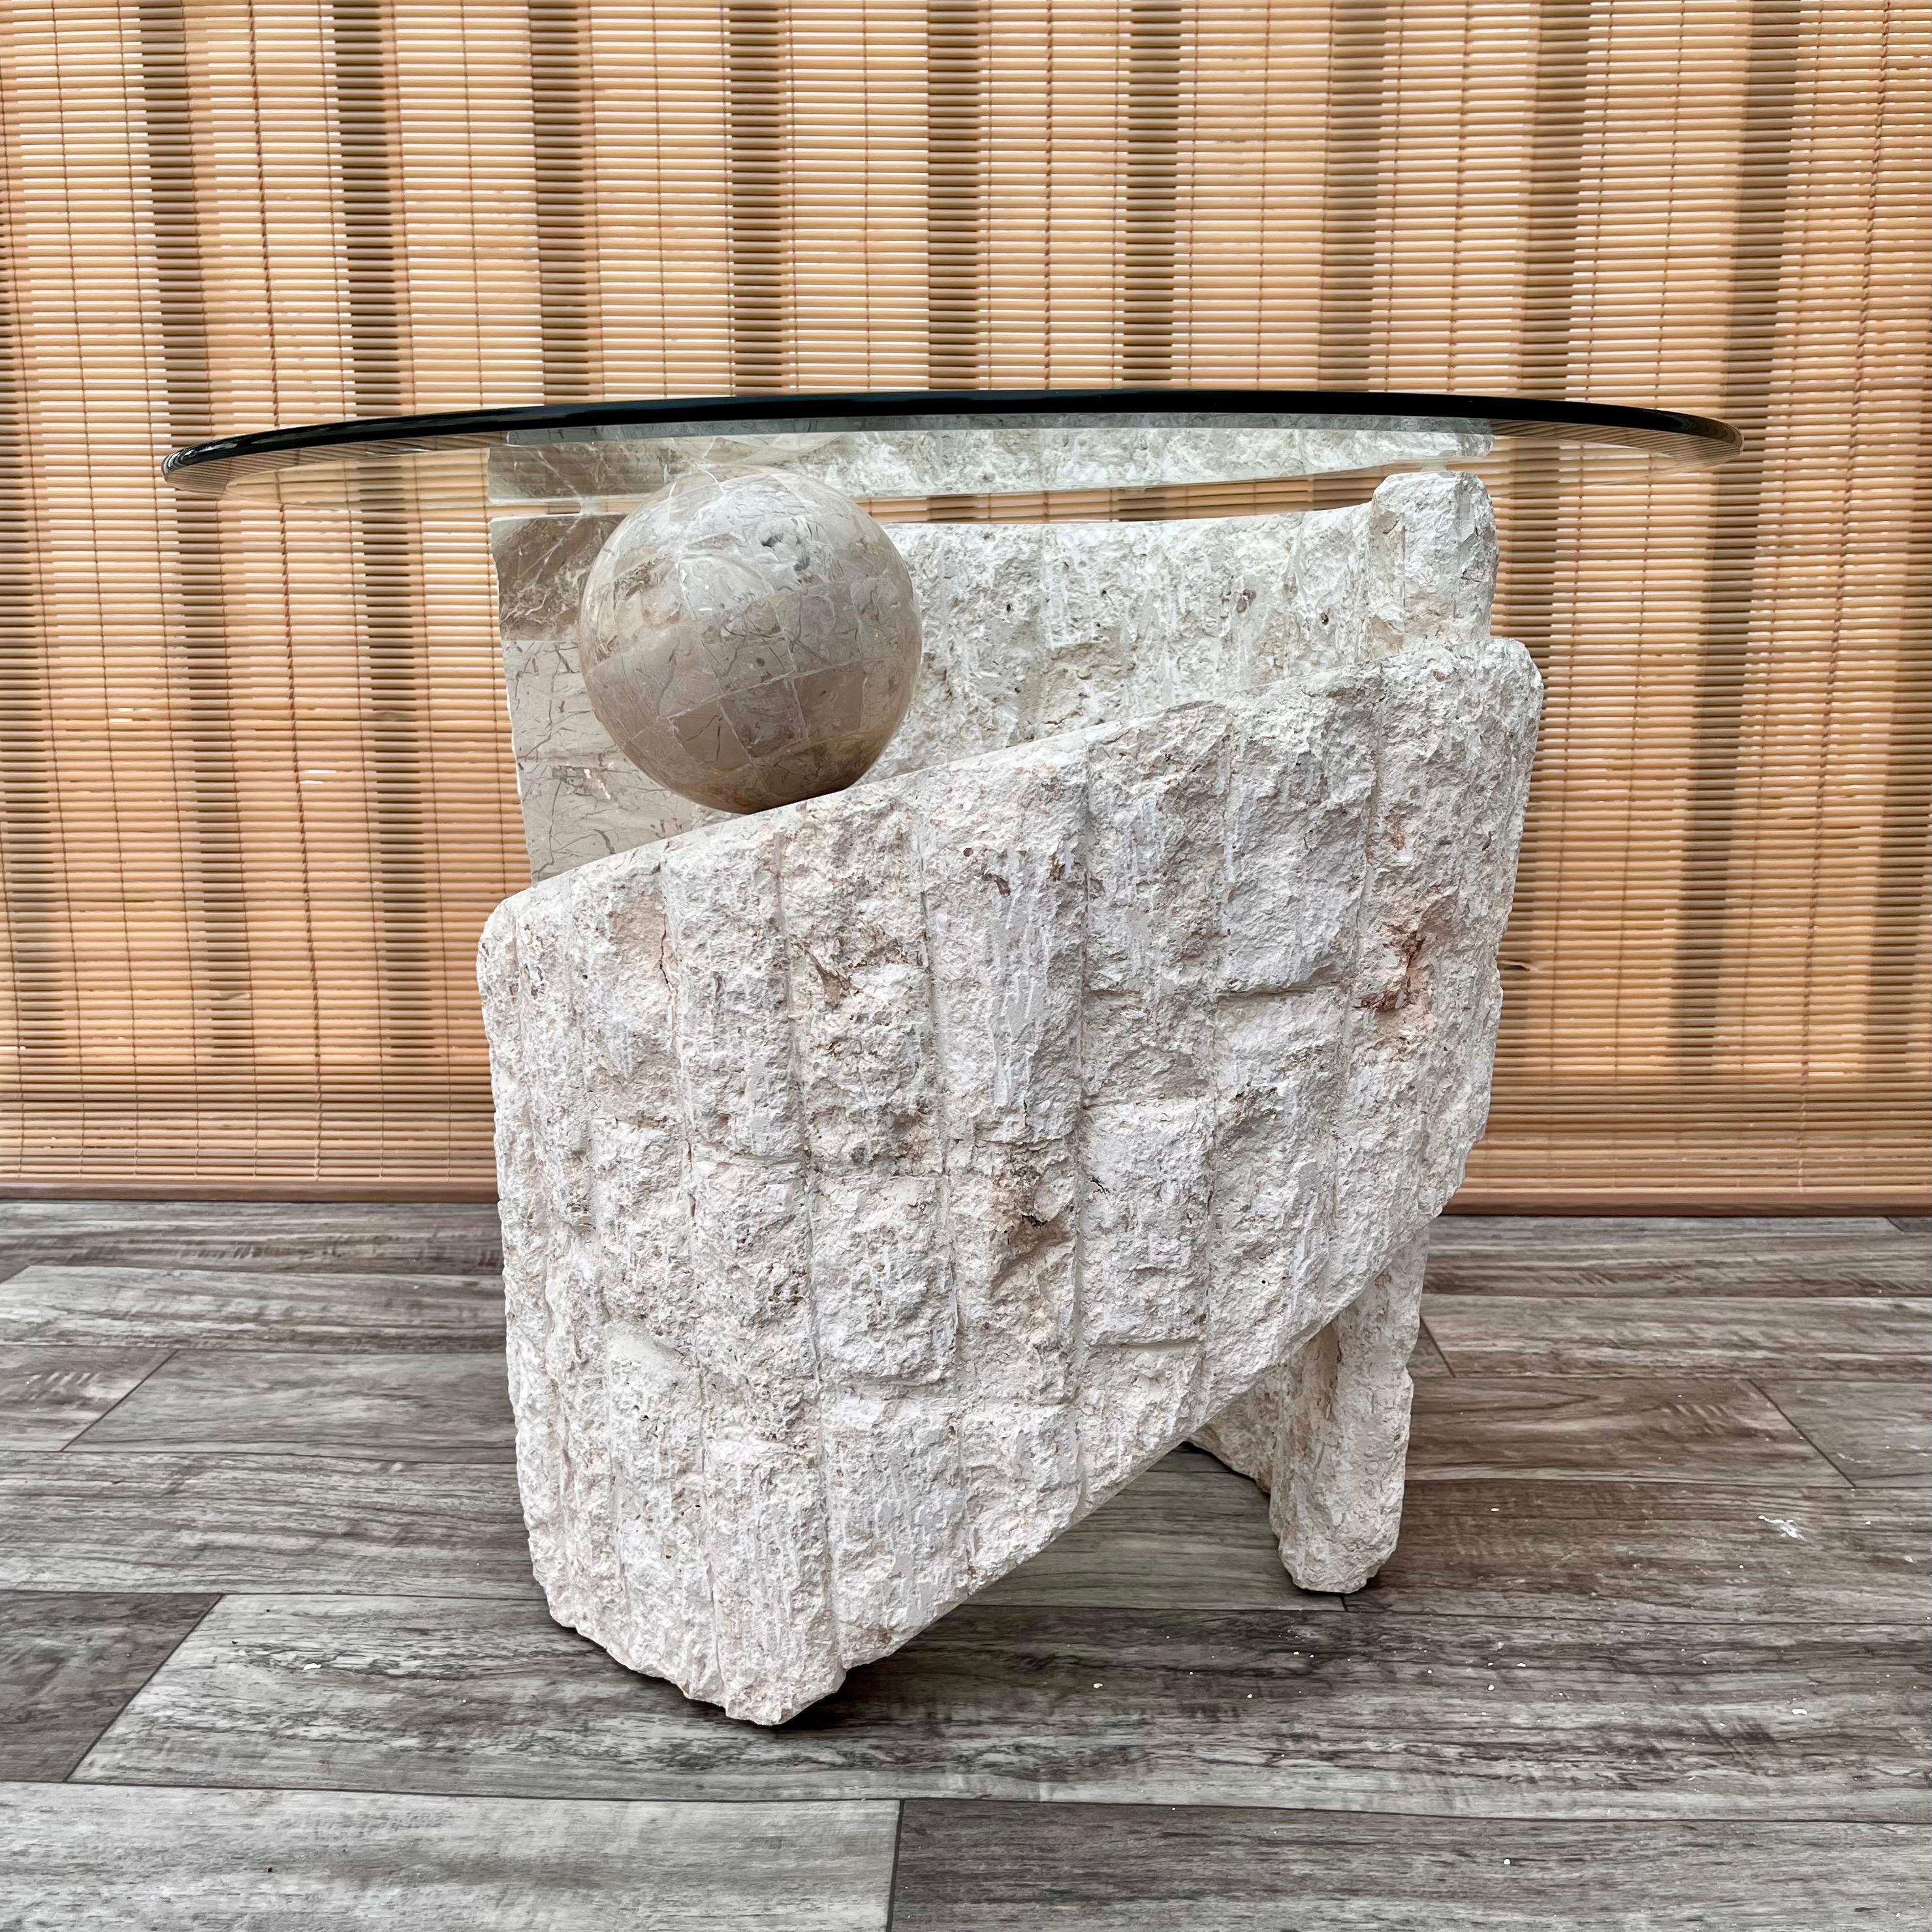 Table d'appoint arrondie en pierre naturelle de Mactan, de style vintage postmoderne, avec plateau en verre. Vers 1980. 
Le piédestal sculptural en spirale est constitué d'une combinaison contrastée de pierres de Mactan de couleur neutre,